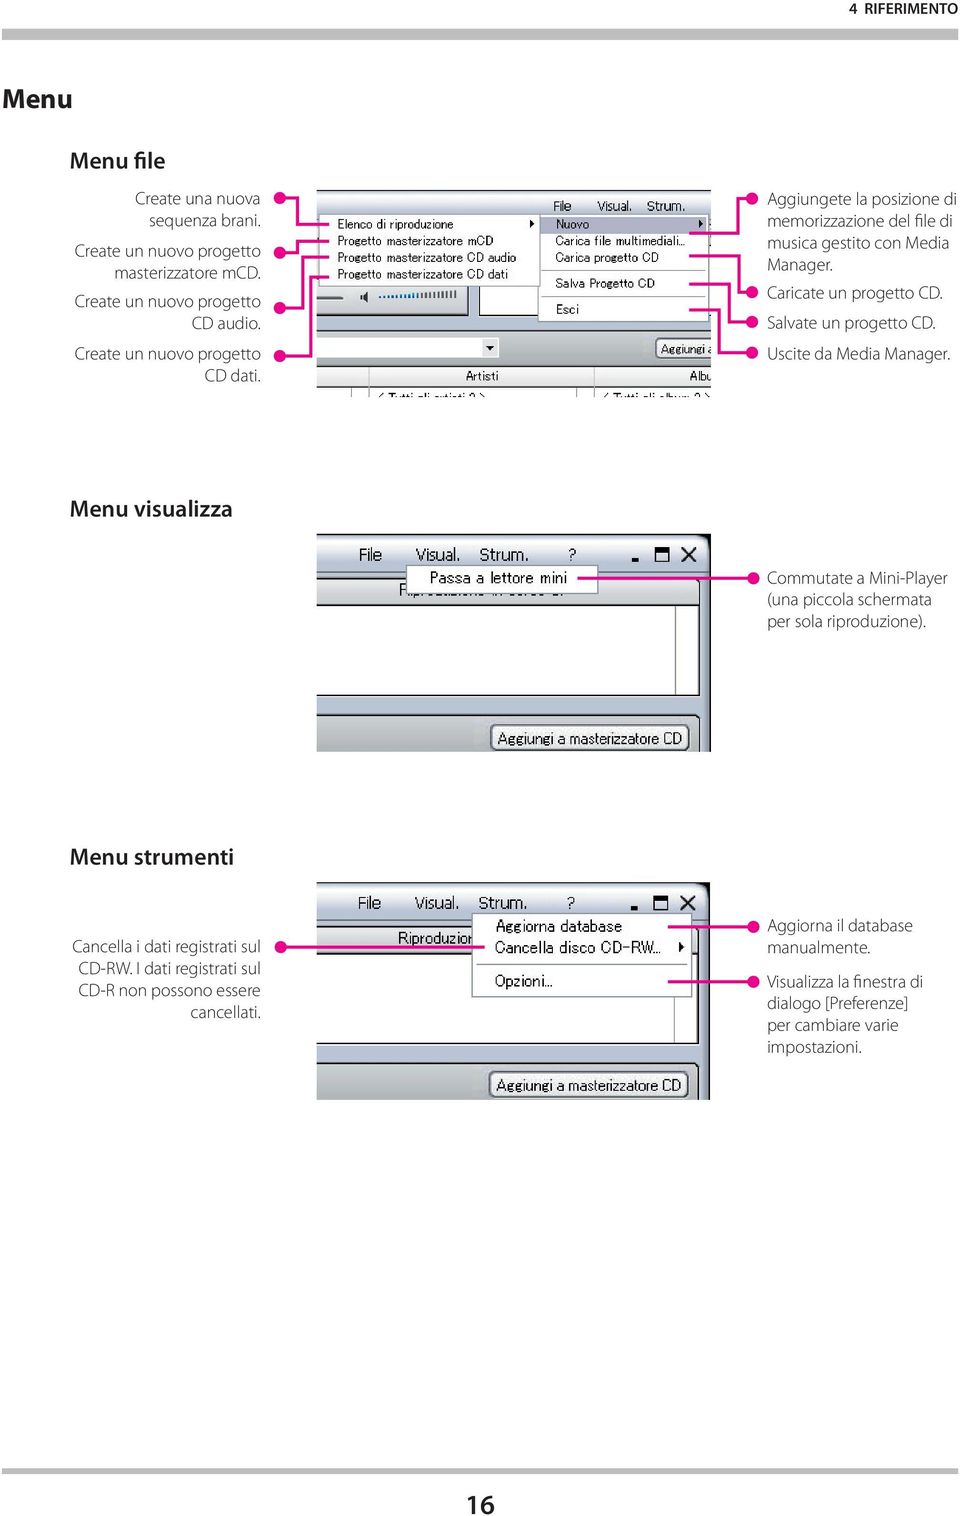 Salvate un progetto CD. Menu visualizza Commutate a Mini-Player (una piccola schermata per sola riproduzione). Menu strumenti Aggiorna il database manualmente.